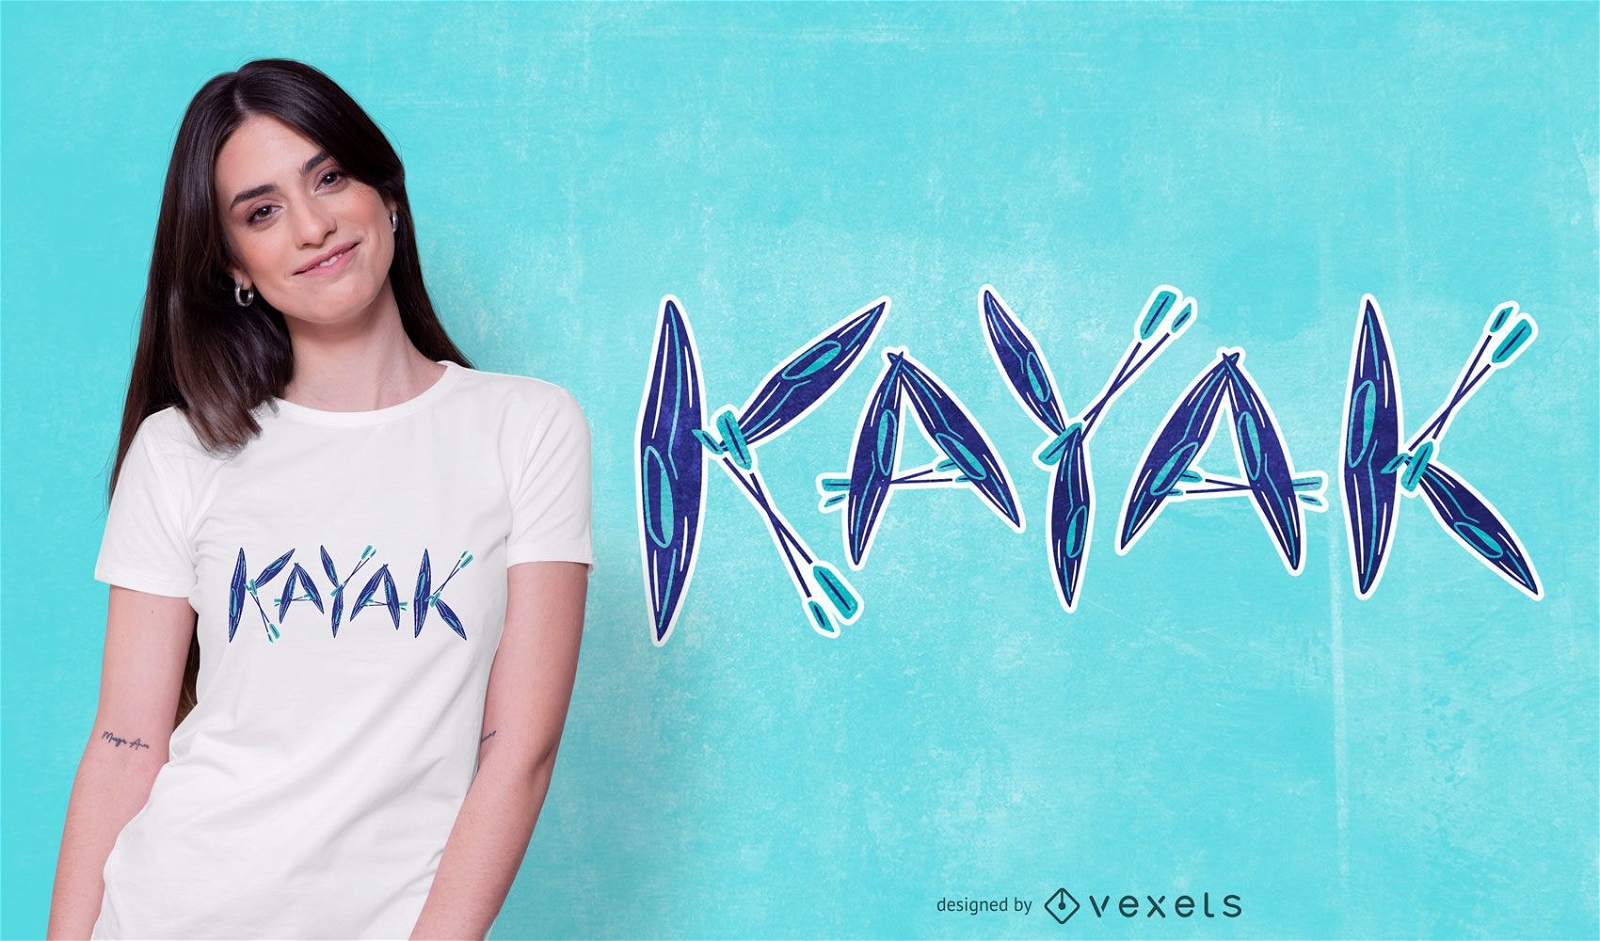 Kayak t-shirt design